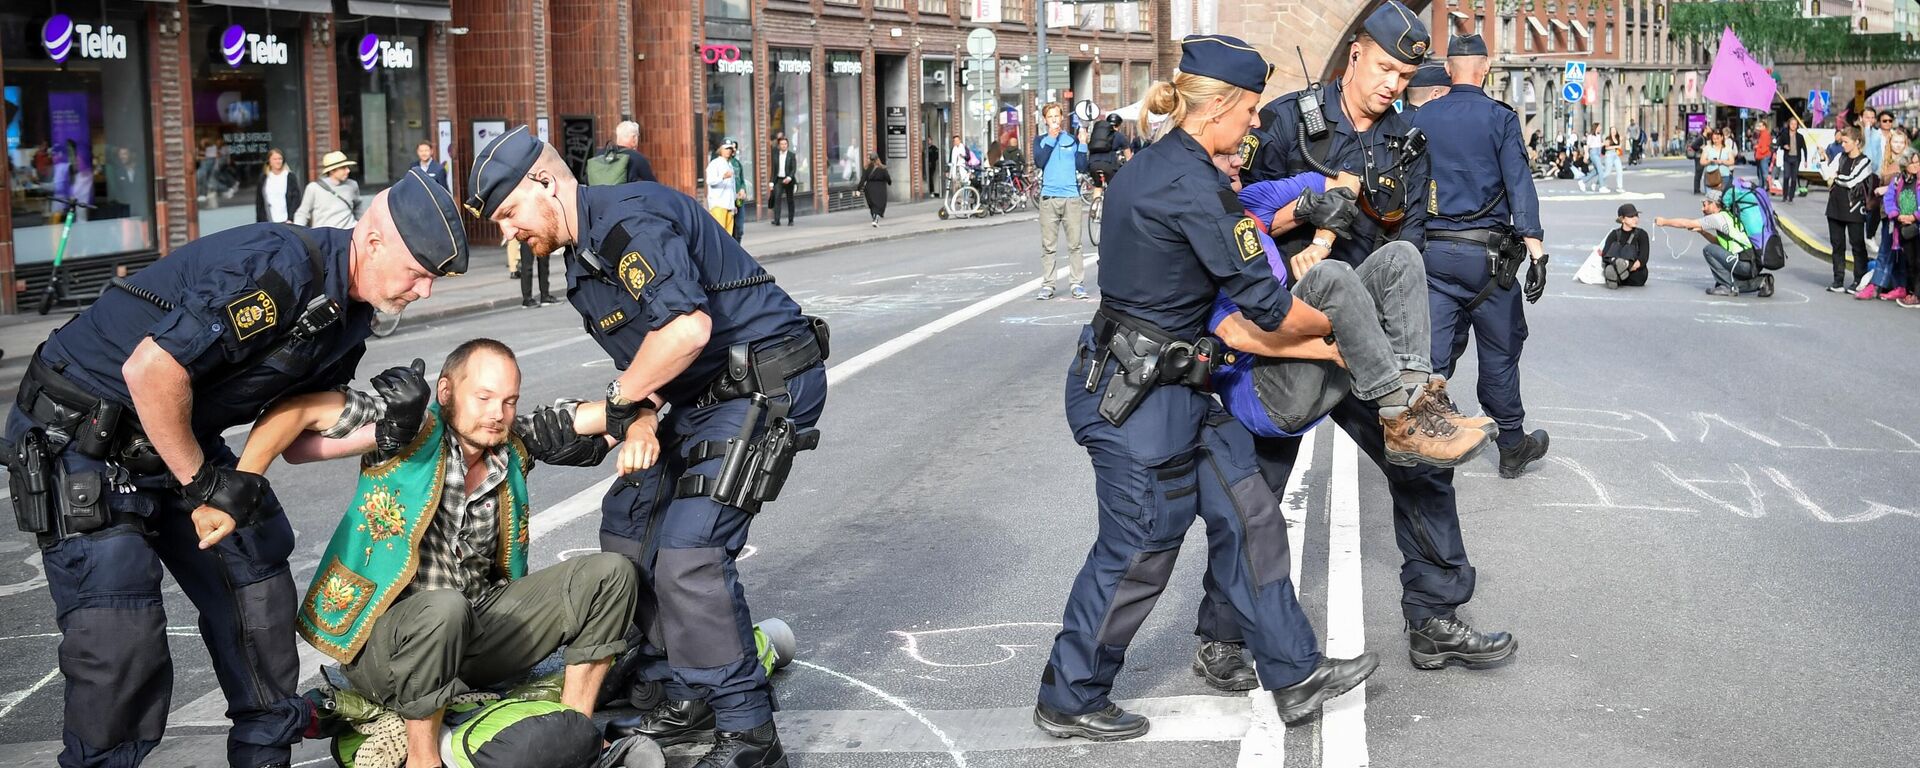 Полиция задерживает участников экологической акции протеста в Стокгольме, Швеция - Sputnik Ўзбекистон, 1920, 18.10.2021